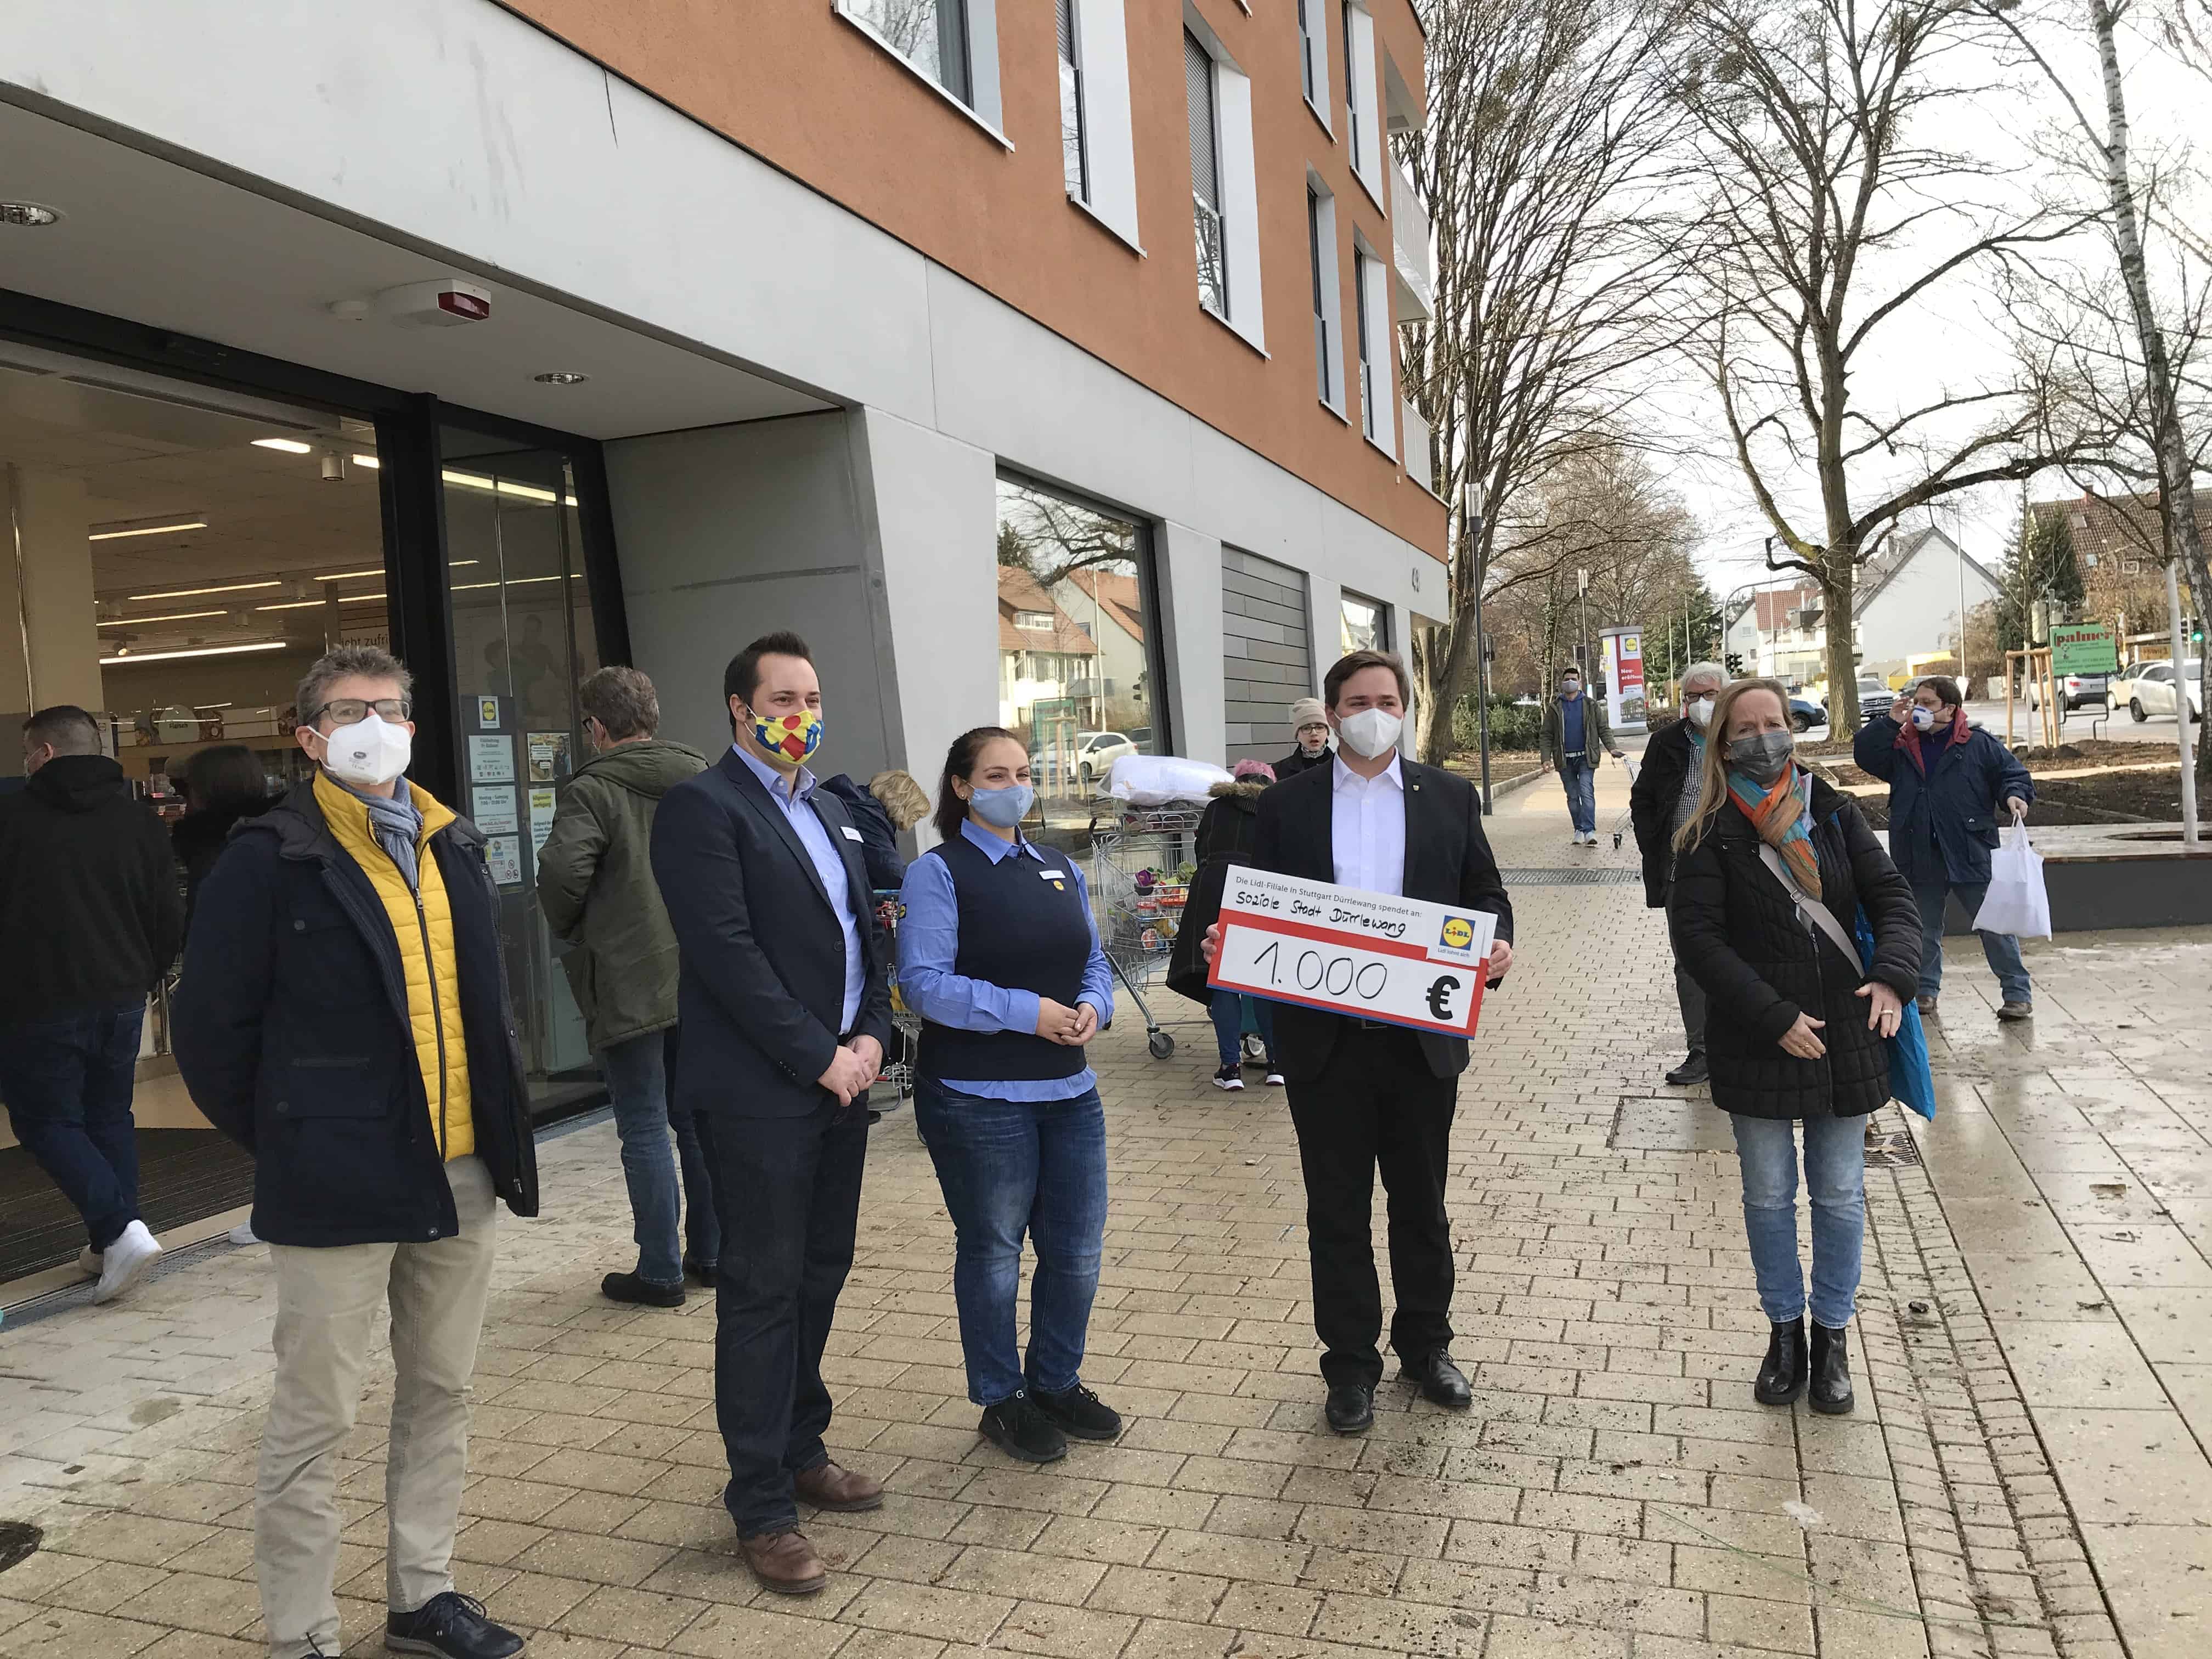 Vor einer Lidl-Filiale stehen drei Männer und zwei Frauen. EIner der Männer hält ein Schild in den Händen, auf dem steht: Soziale Stadt Dürrlewang, 1000€.